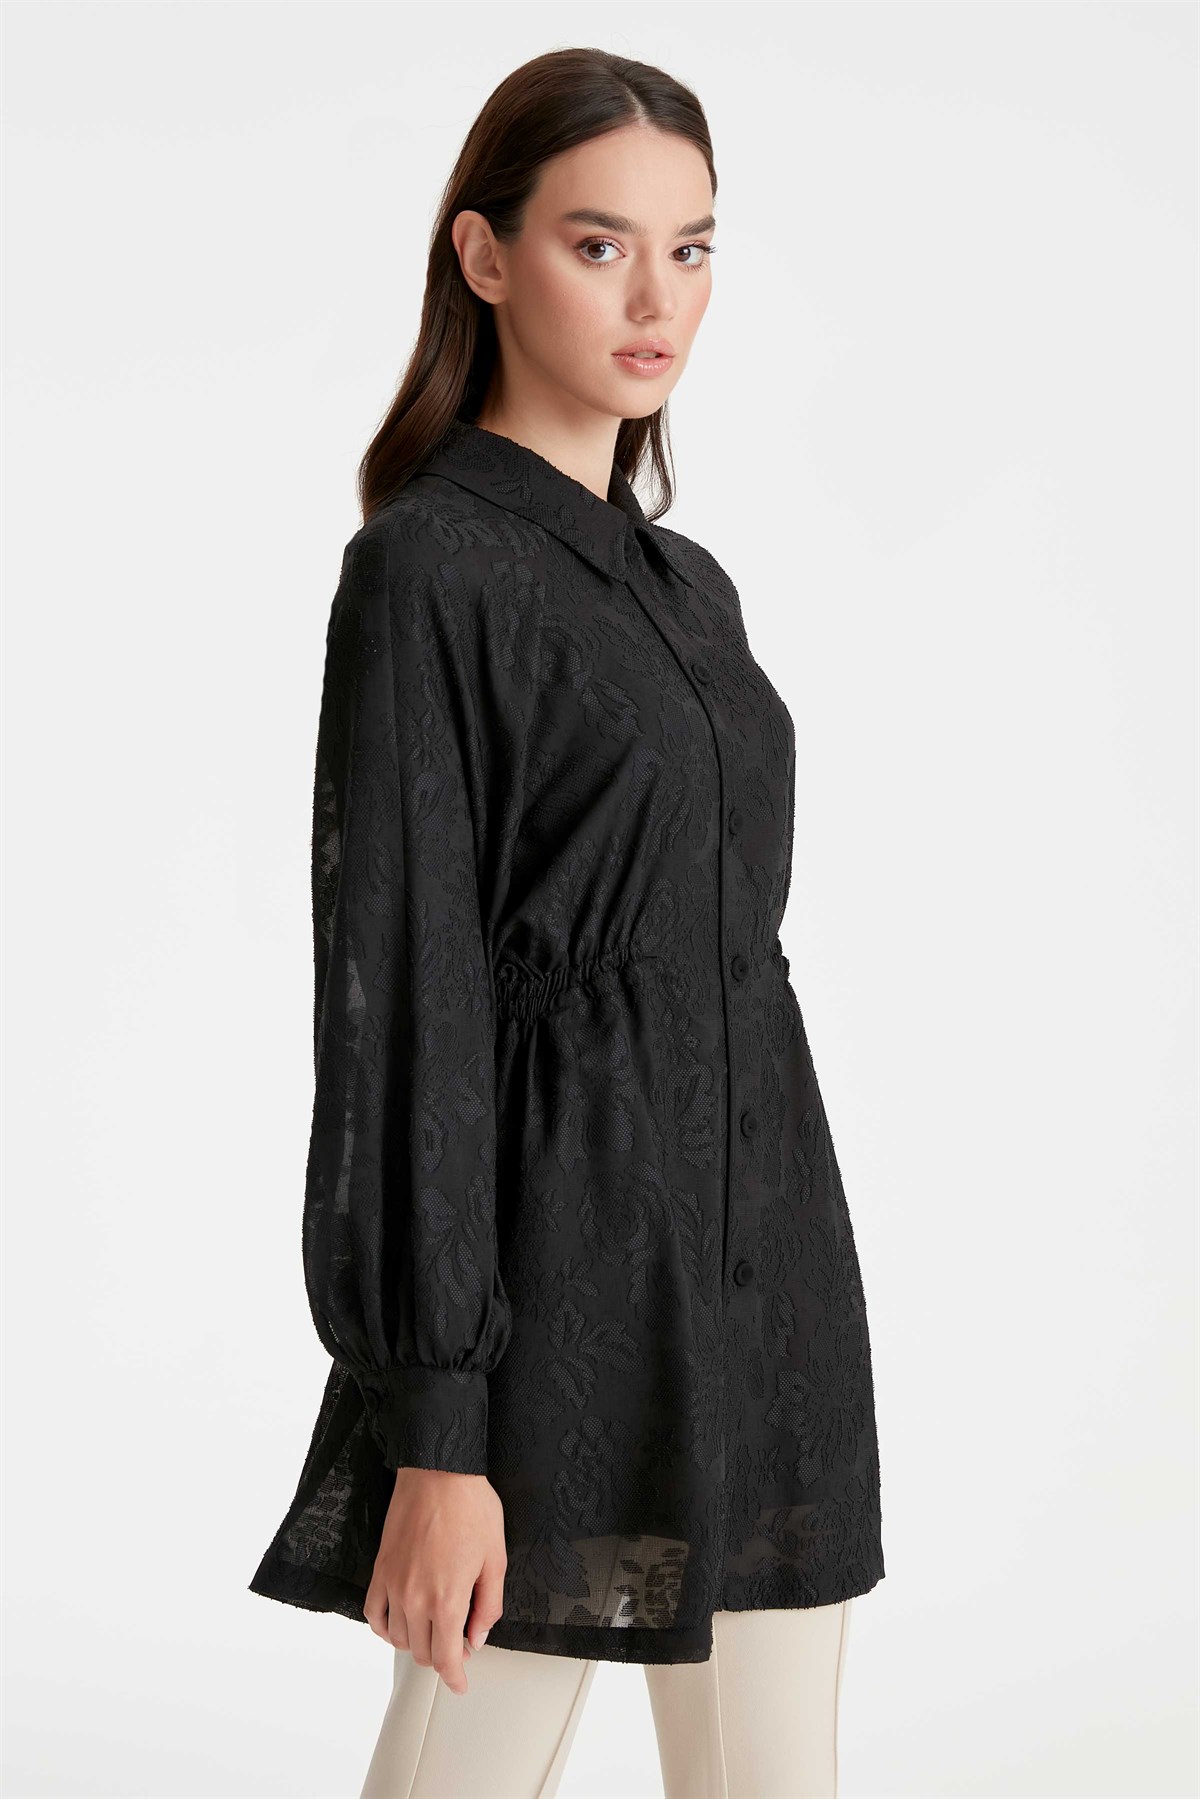 Jakarlı Ceket Uzun Kol Bluz İkili Takım - Siyah